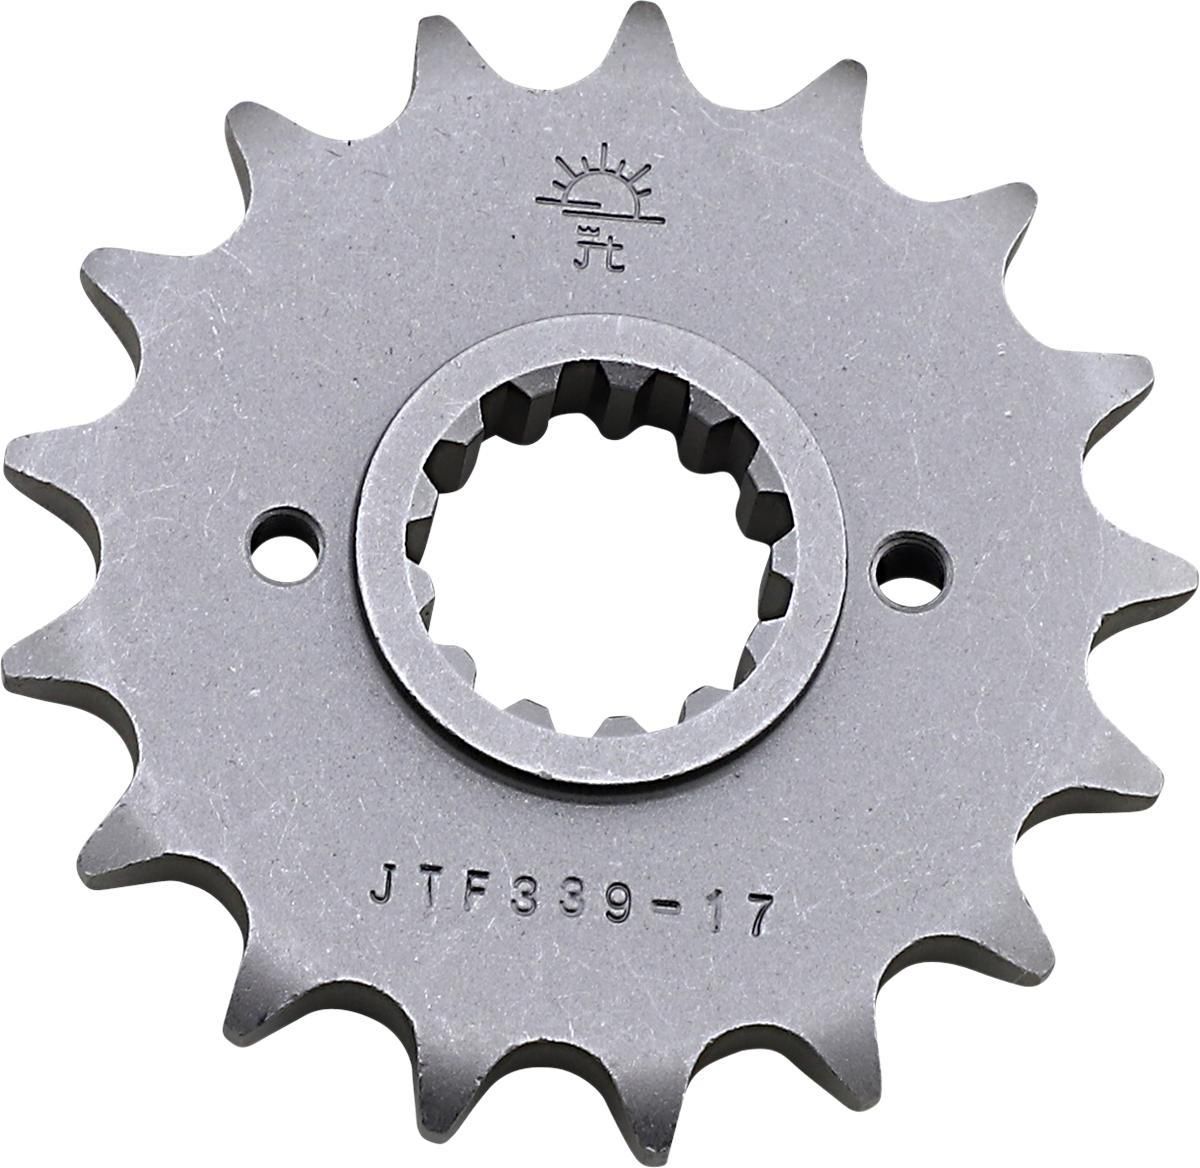 3EFZ-JT-SPROCKET-JTF339-17 Counter Shaft Sprocket - 17-Tooth